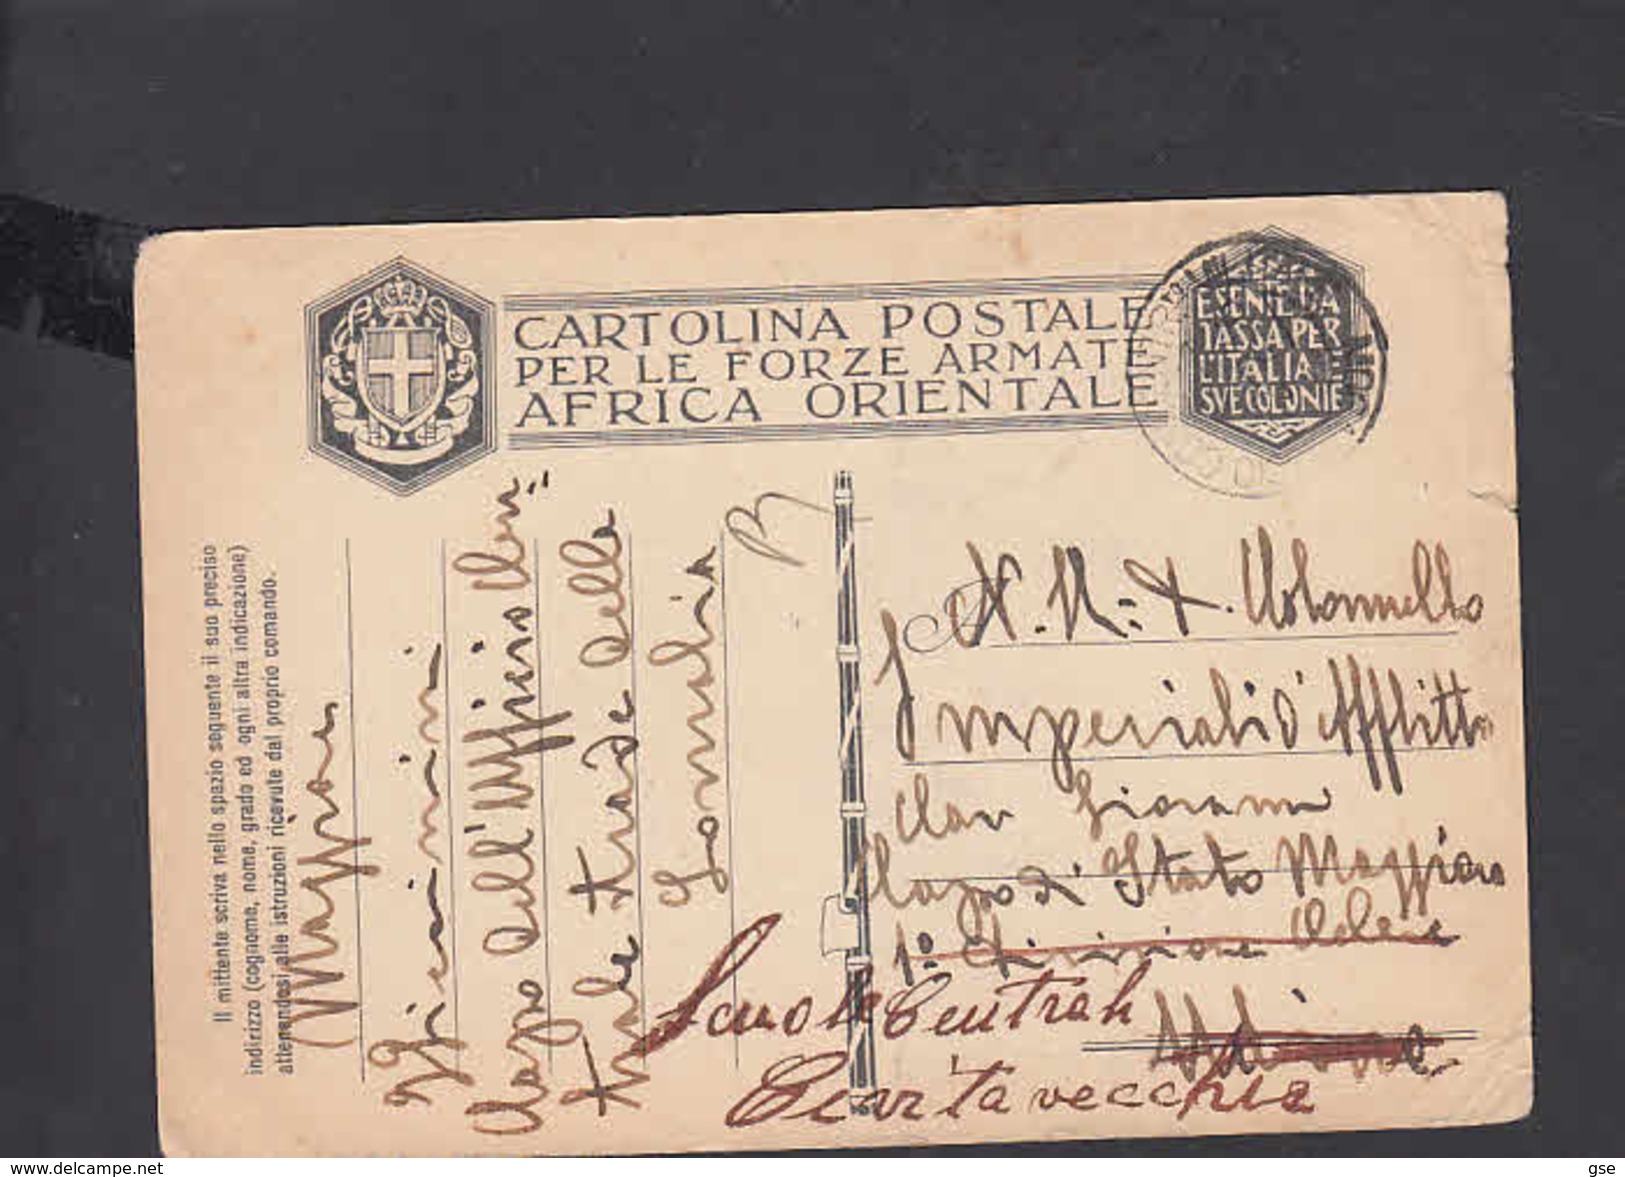 CARTOLINA POSTALE - Forze Armate - A.O.I. - 1936 - Pertile 19 - Africa Orientale Italiana